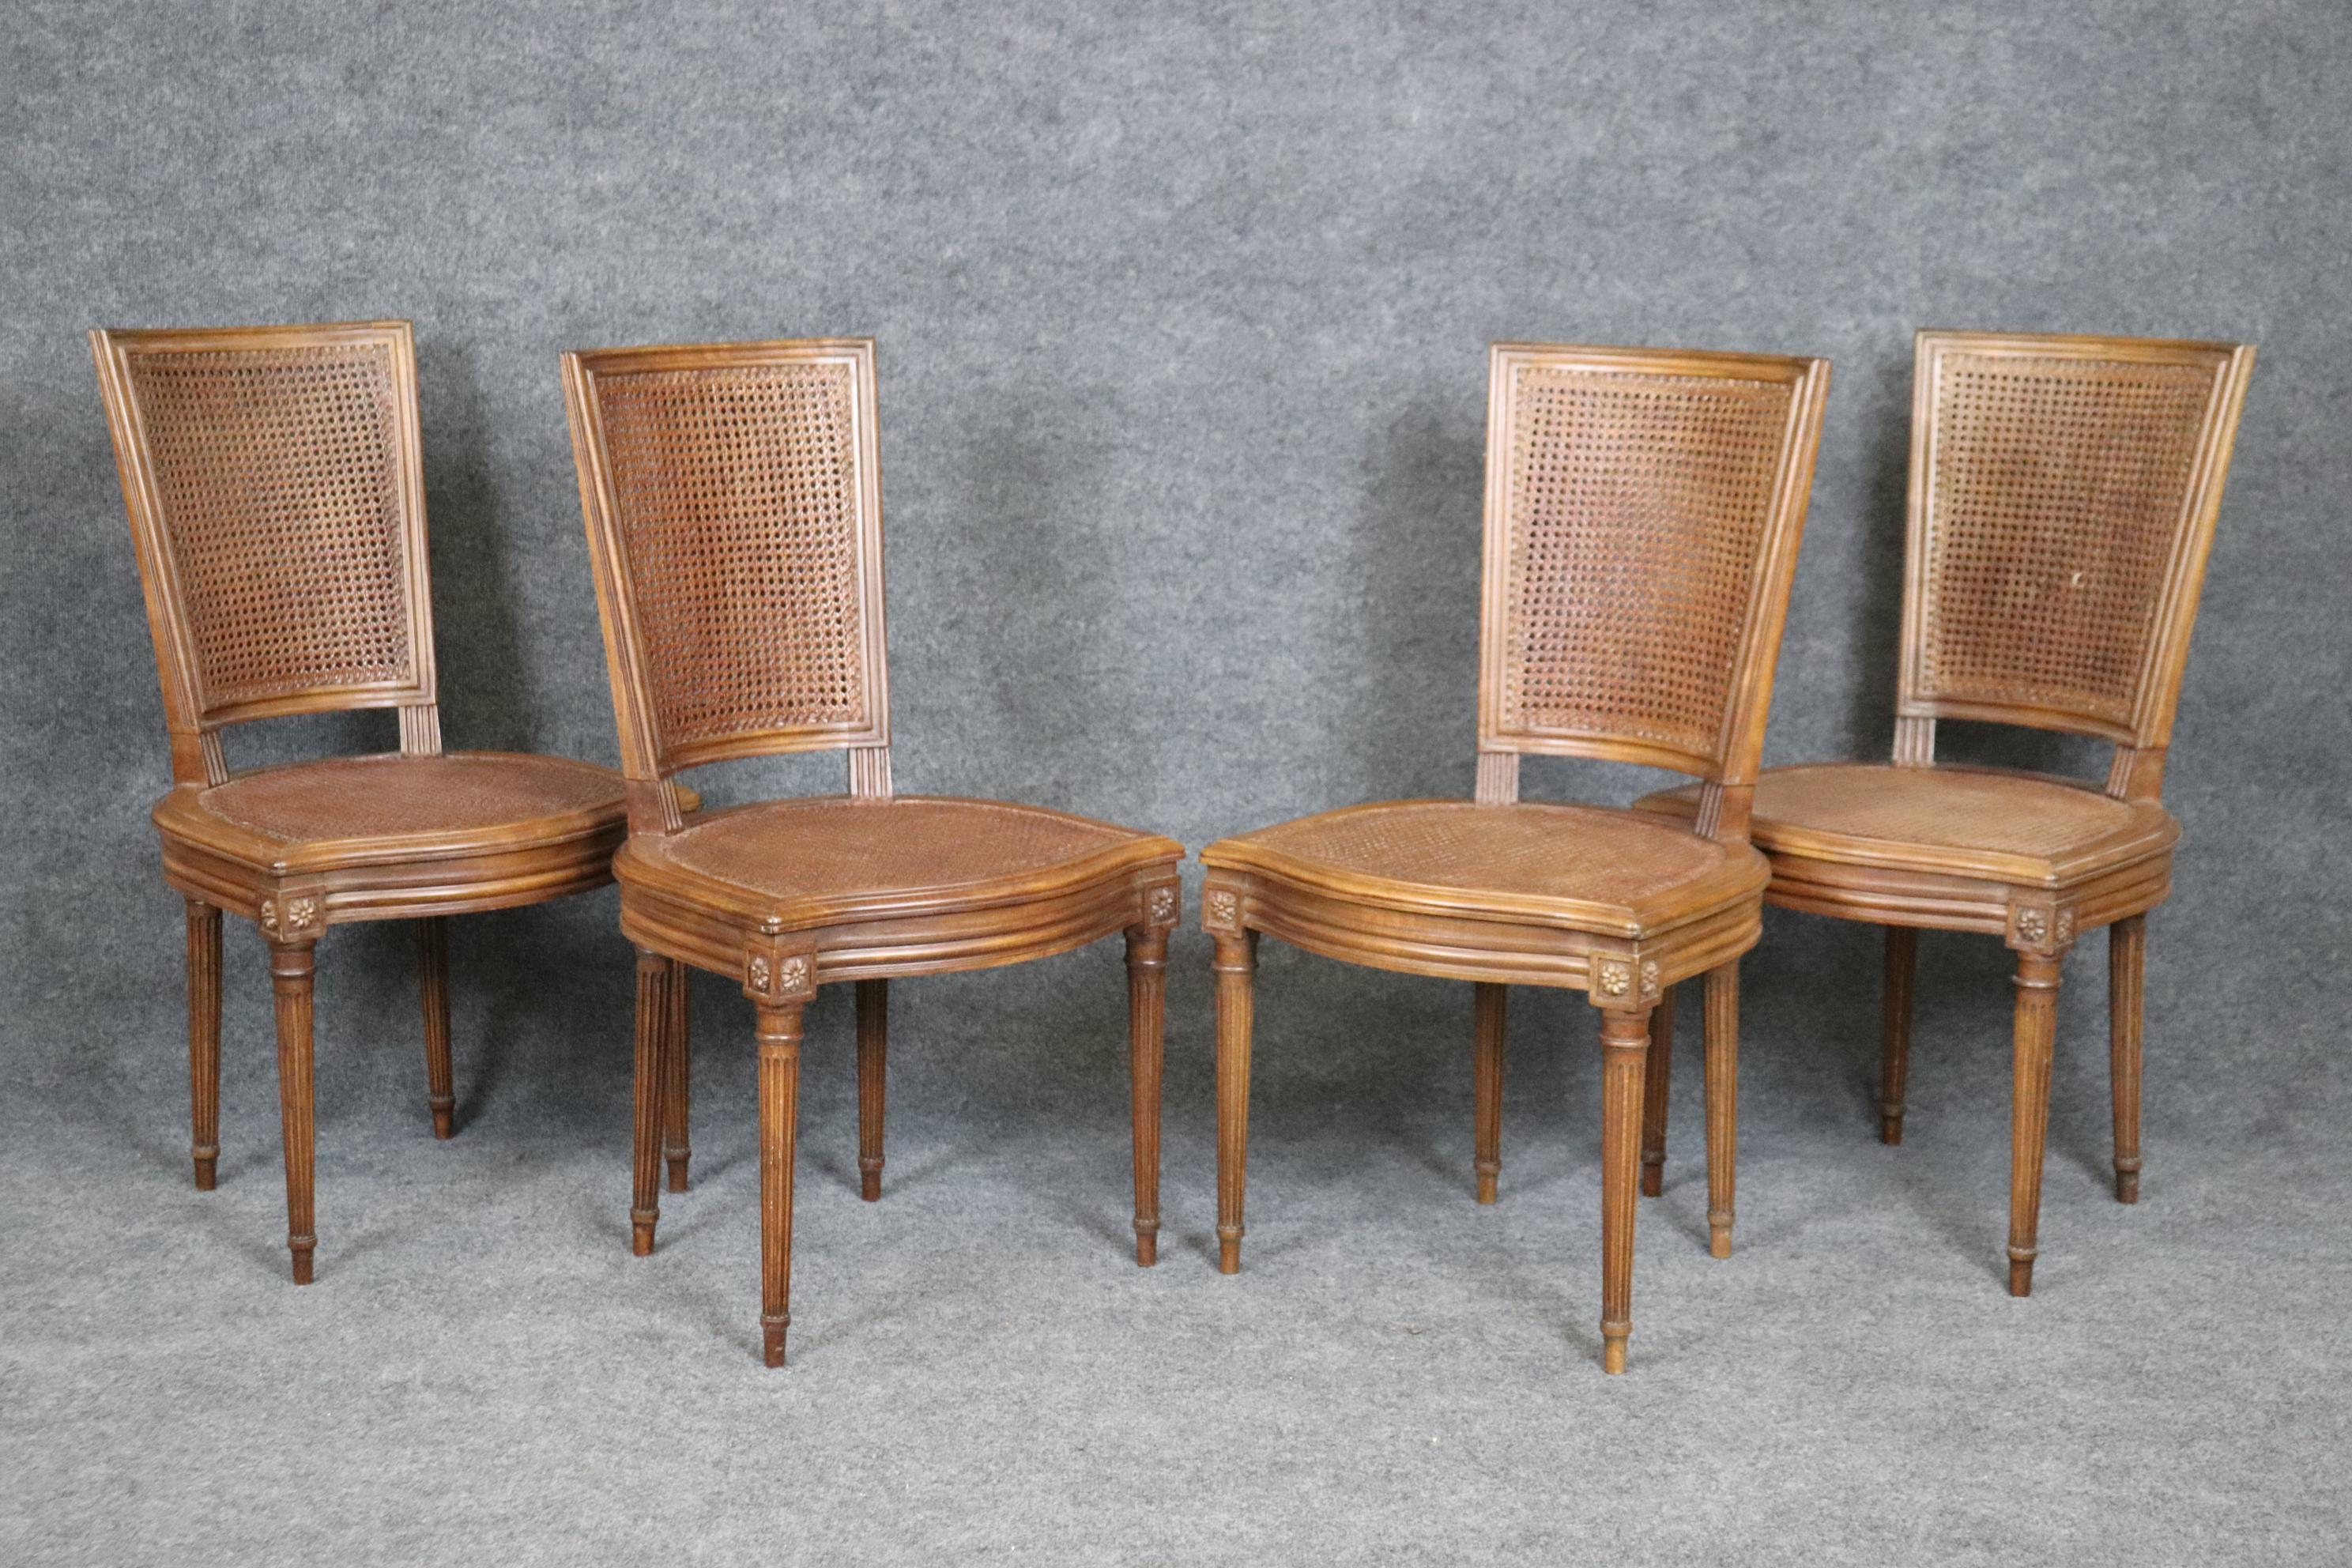 Il s'agit d'un magnifique ensemble de 4 chaises à dossier en cannage, de fabrication française et signées 